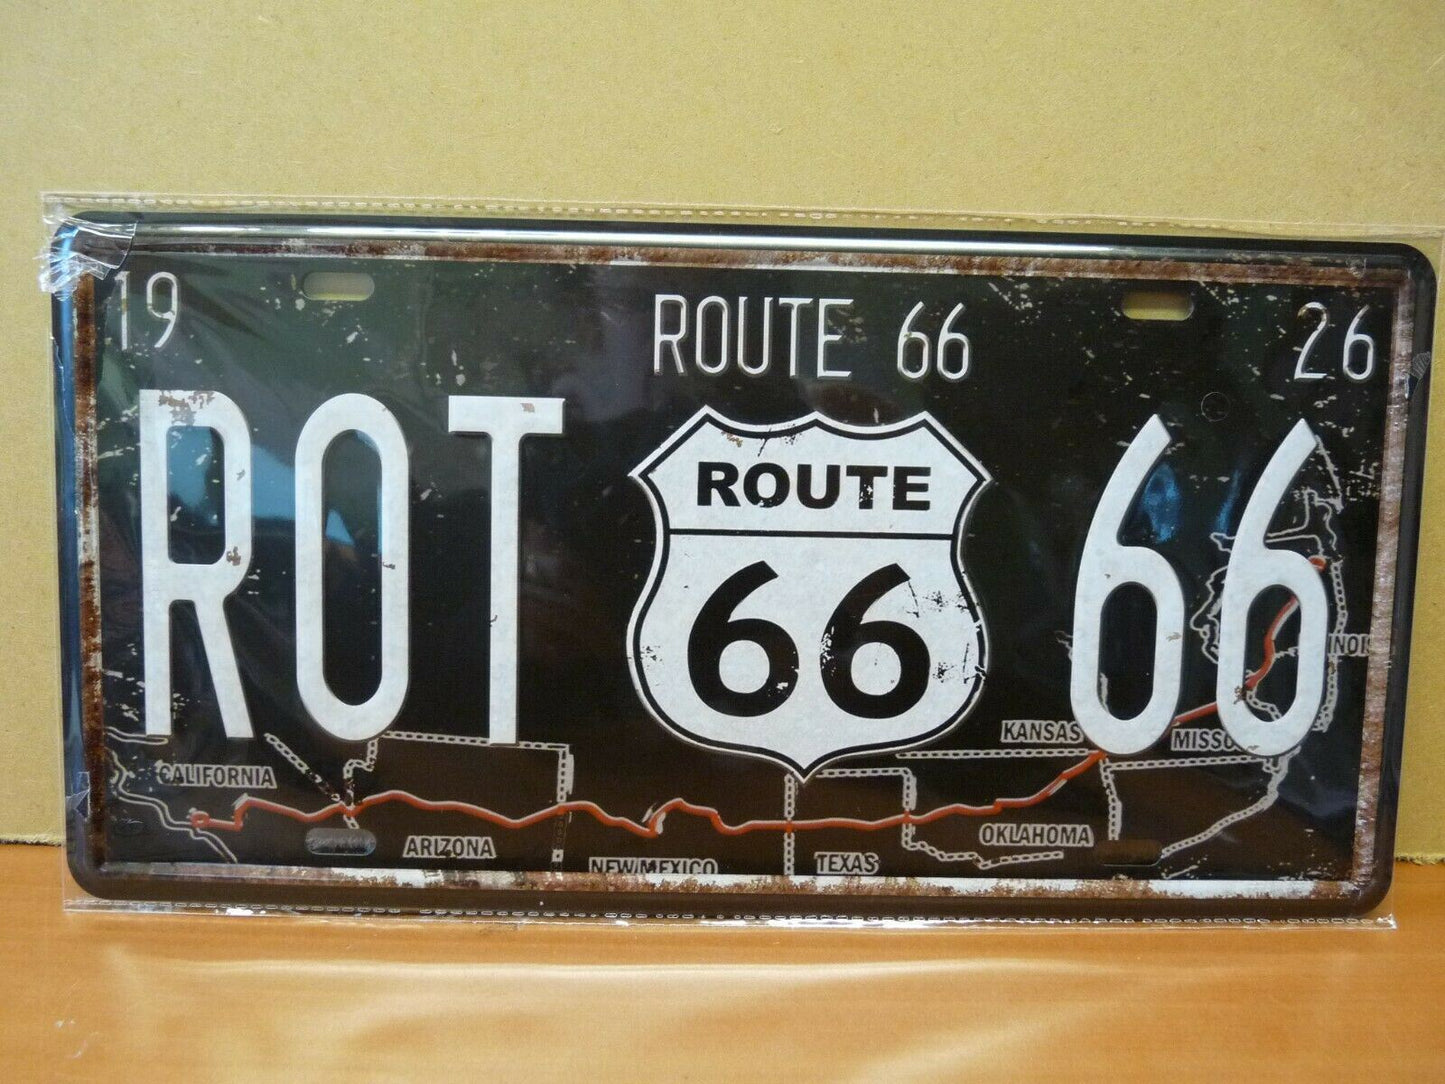 PA51 PLAQUES TOLEE vintage 15 X 30 cm : Route 66 US